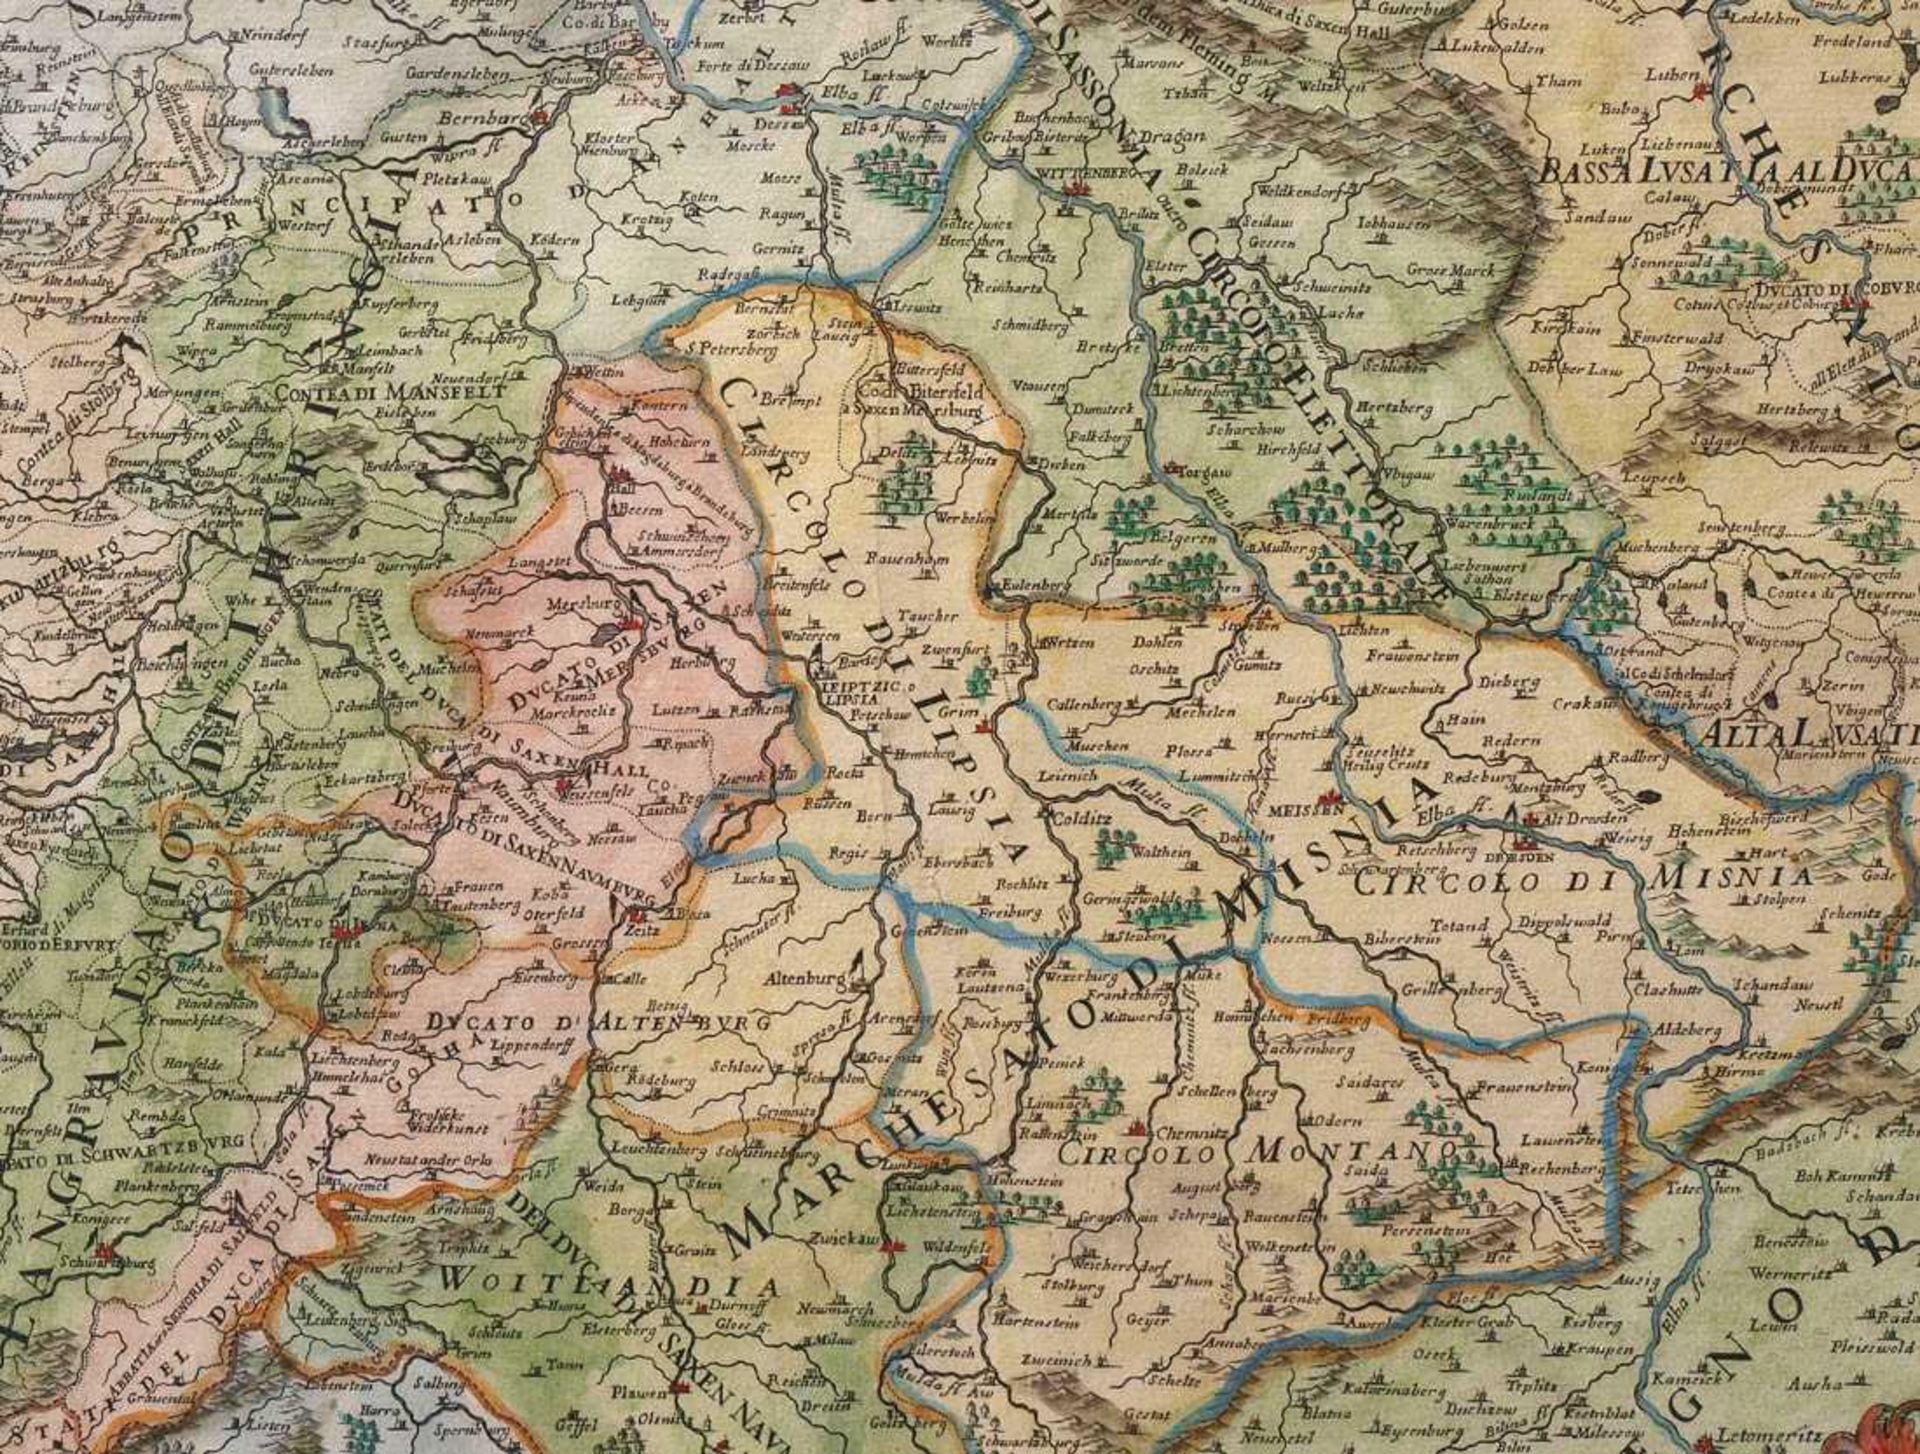 Cantelli, GiacomoLandkarte von Sachsen und Thüringen mit umgebenden Gebieten. Kupferstich, - Bild 2 aus 2